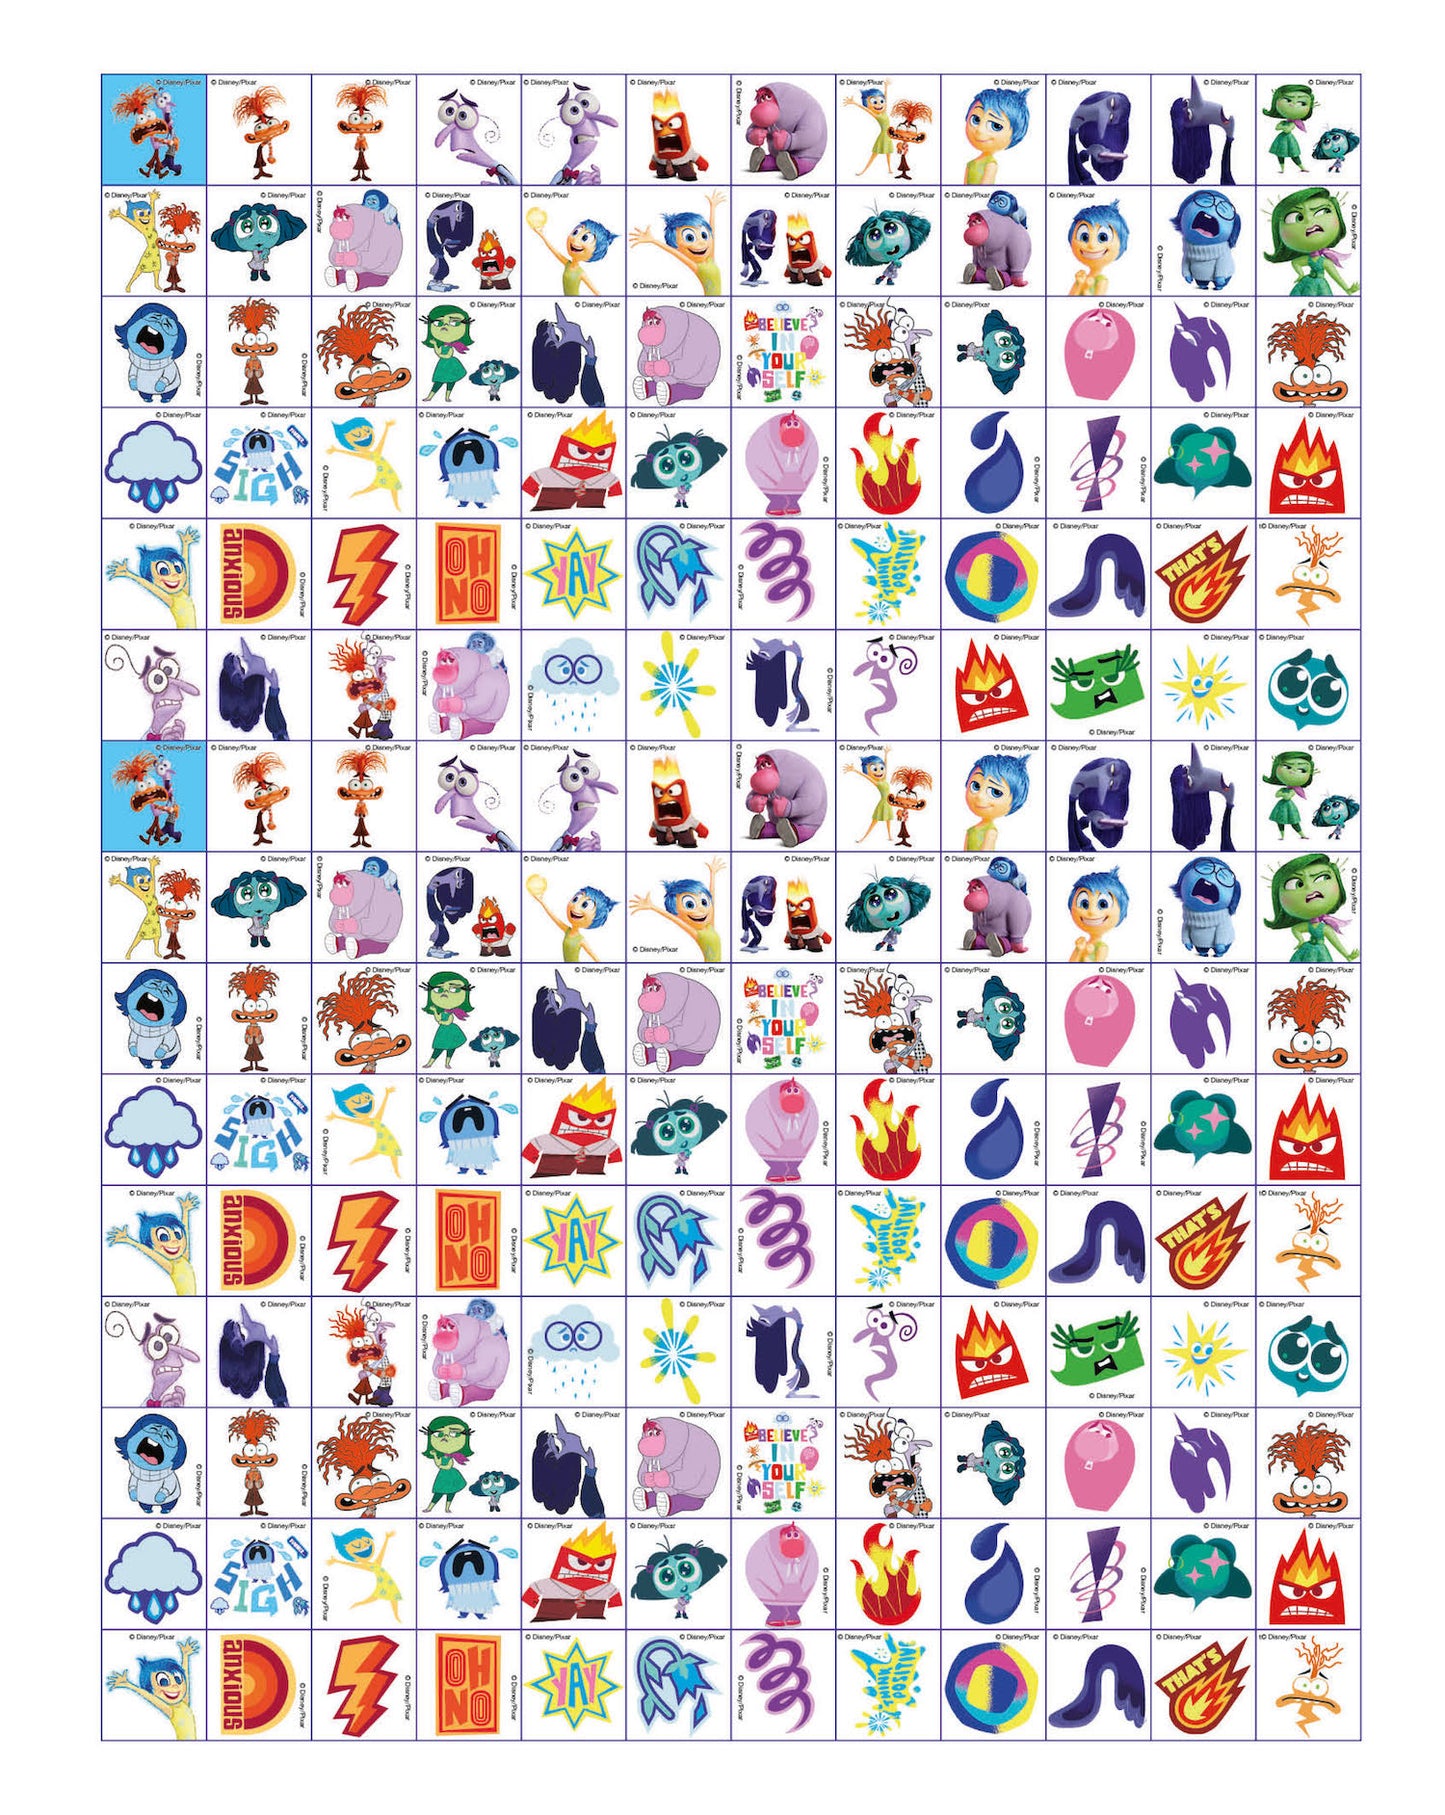 1000 Sticker Inside Out 2::Tanti giochi e attività